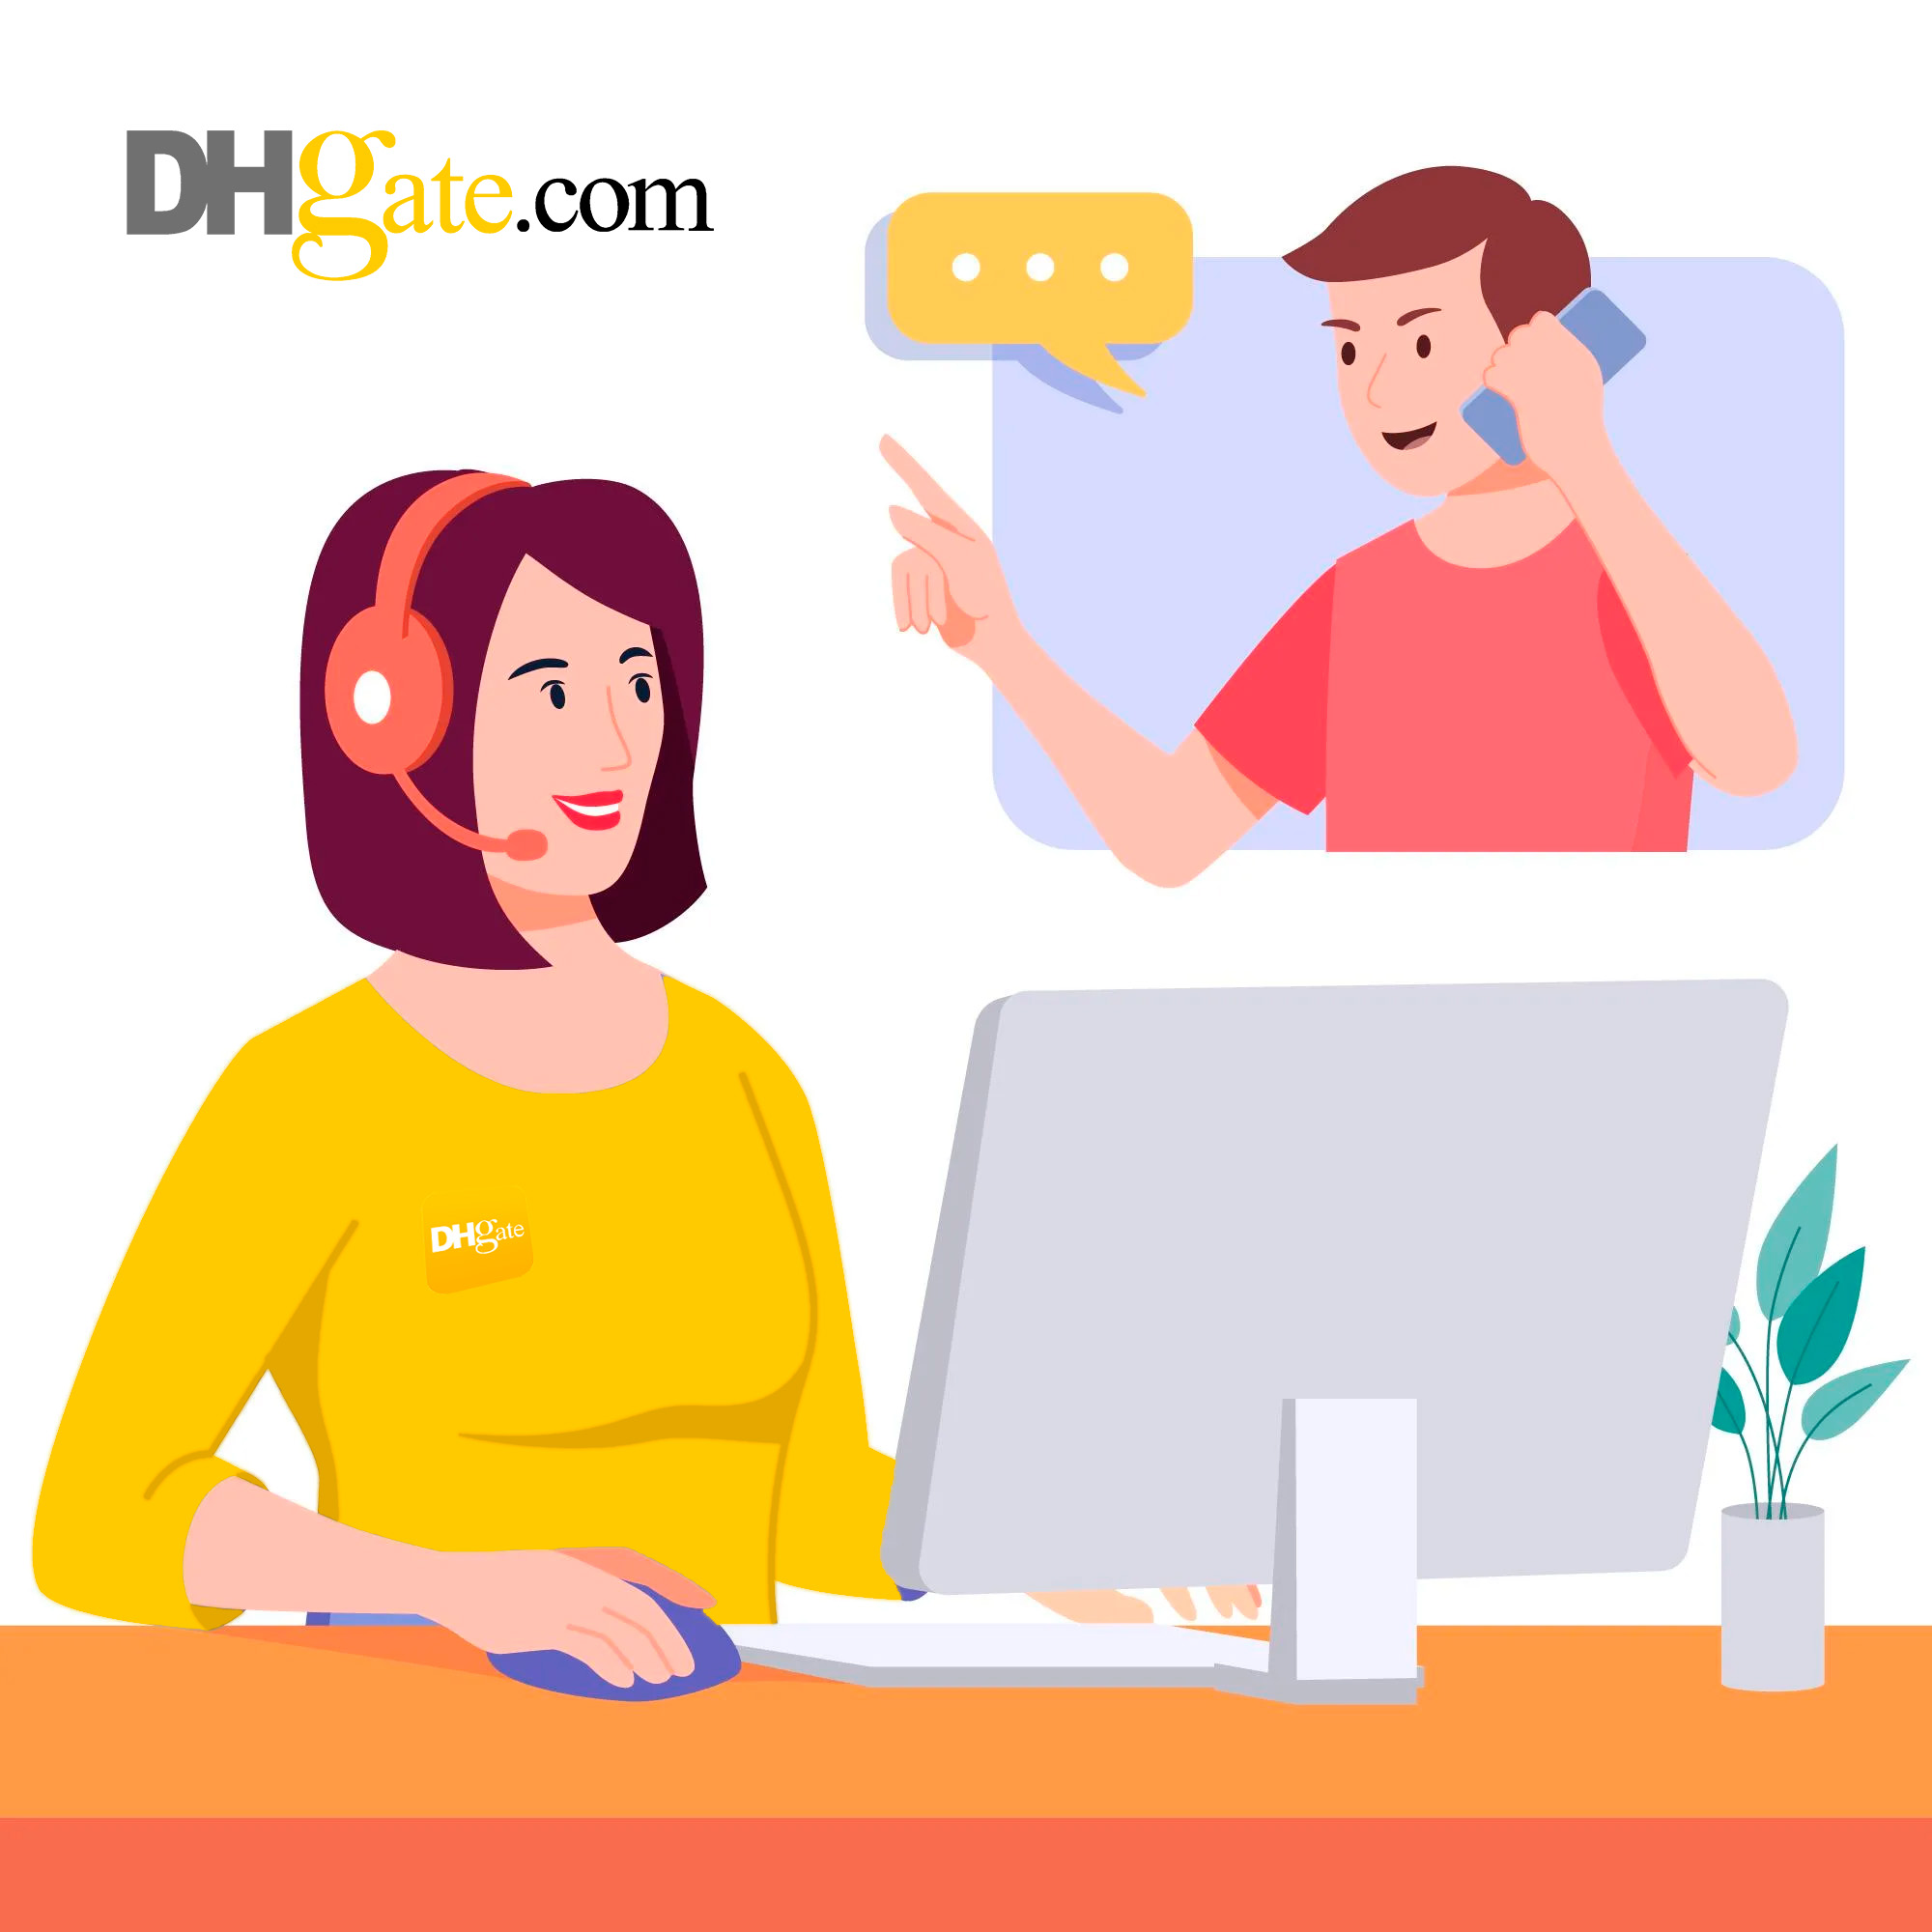 ¿Como contactar con los vendedores de DHgate?